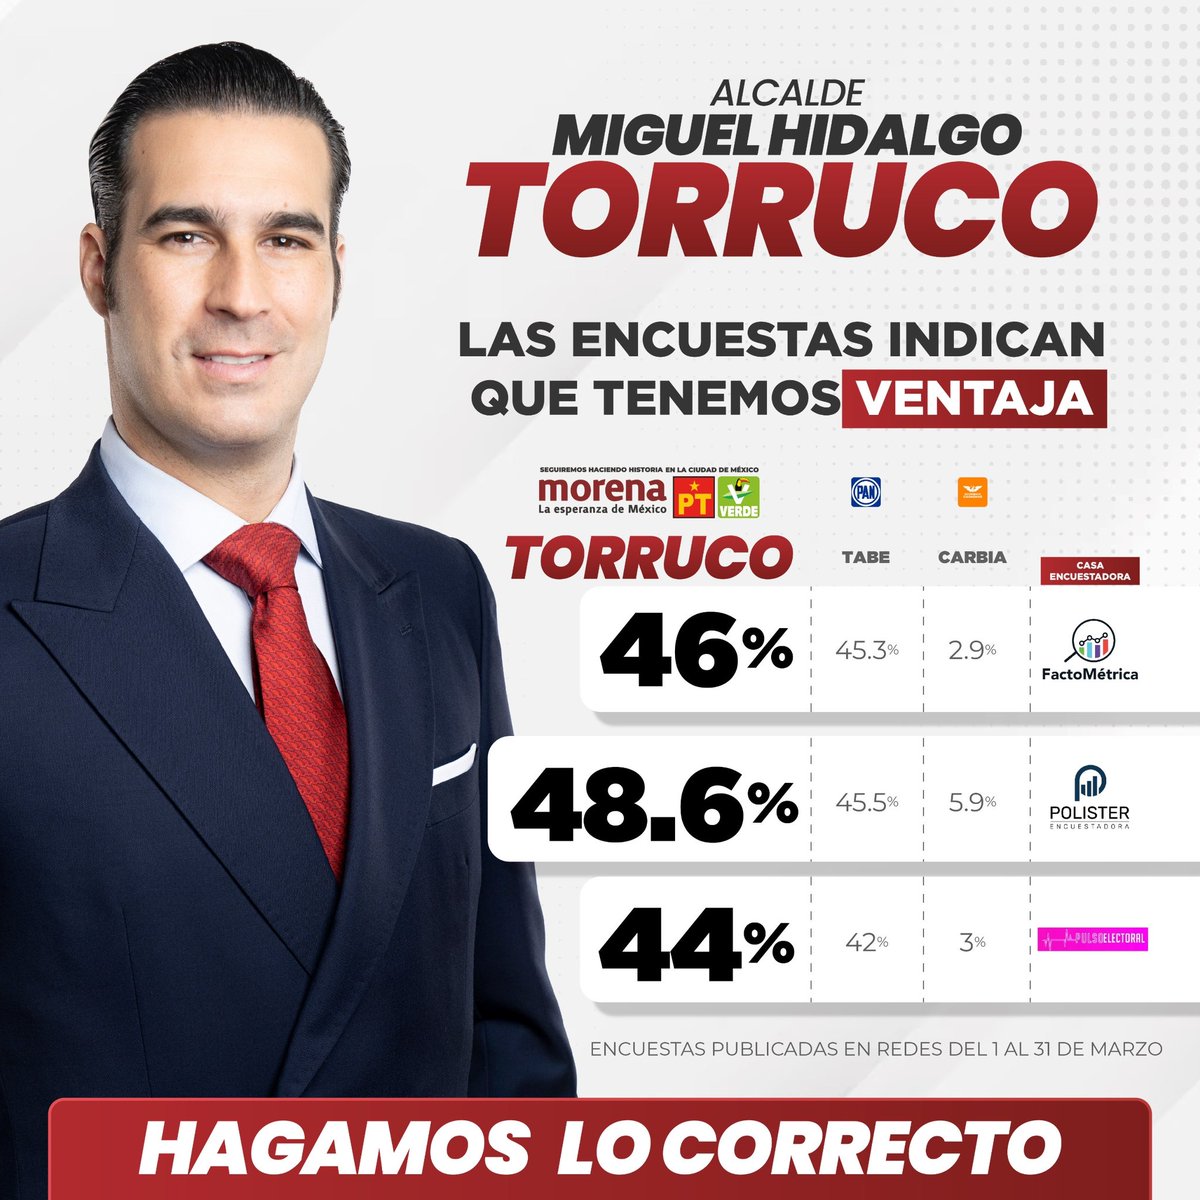 ¡Vamos arriba en las encuestas, las y los vecinos quieren que Miguel Hidalgo vuelva a brillar! 🇲🇽 La gente está cansada de un mal gobierno. Estaré a la altura de todas y todos ustedes, no les voy a fallar. Hagamos lo correcto.